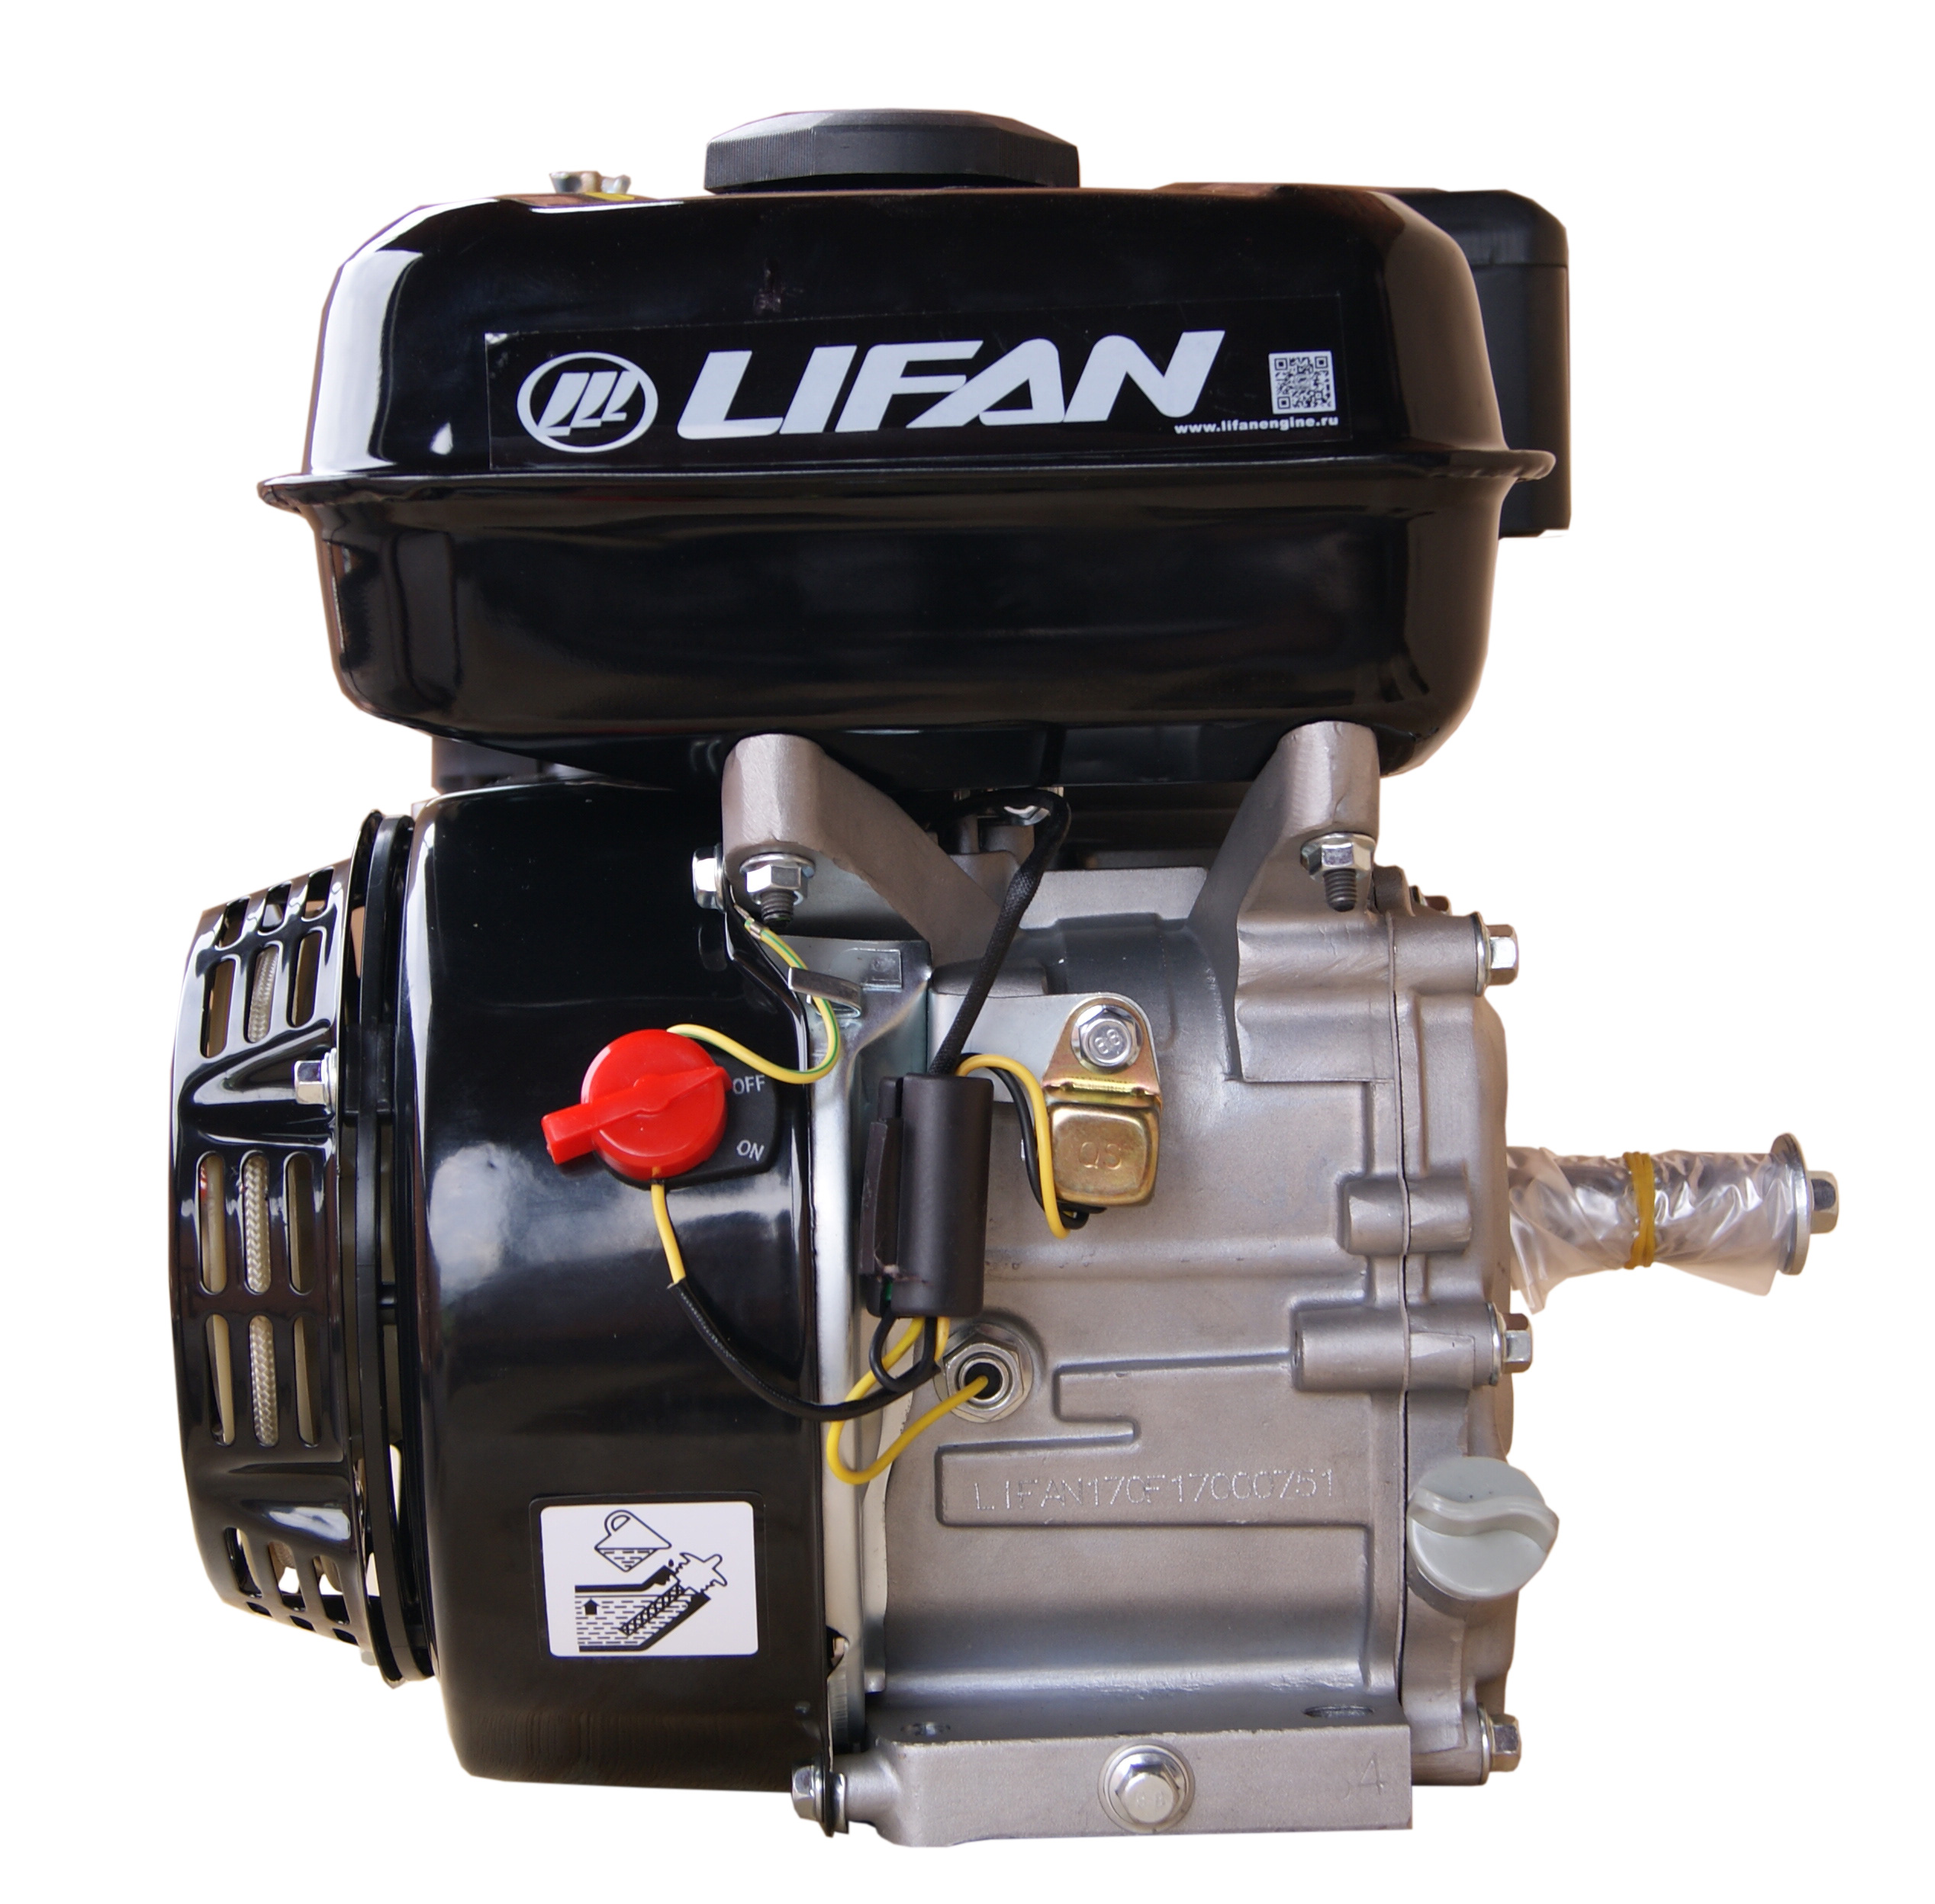 Двигатель лифан 20 л с цена купить. Двигатель Lifan 6,5 л.с. 168f-2. Lifan 170f. Двигатель Lifan 170f. Двигатель Lifan 168f-2d.